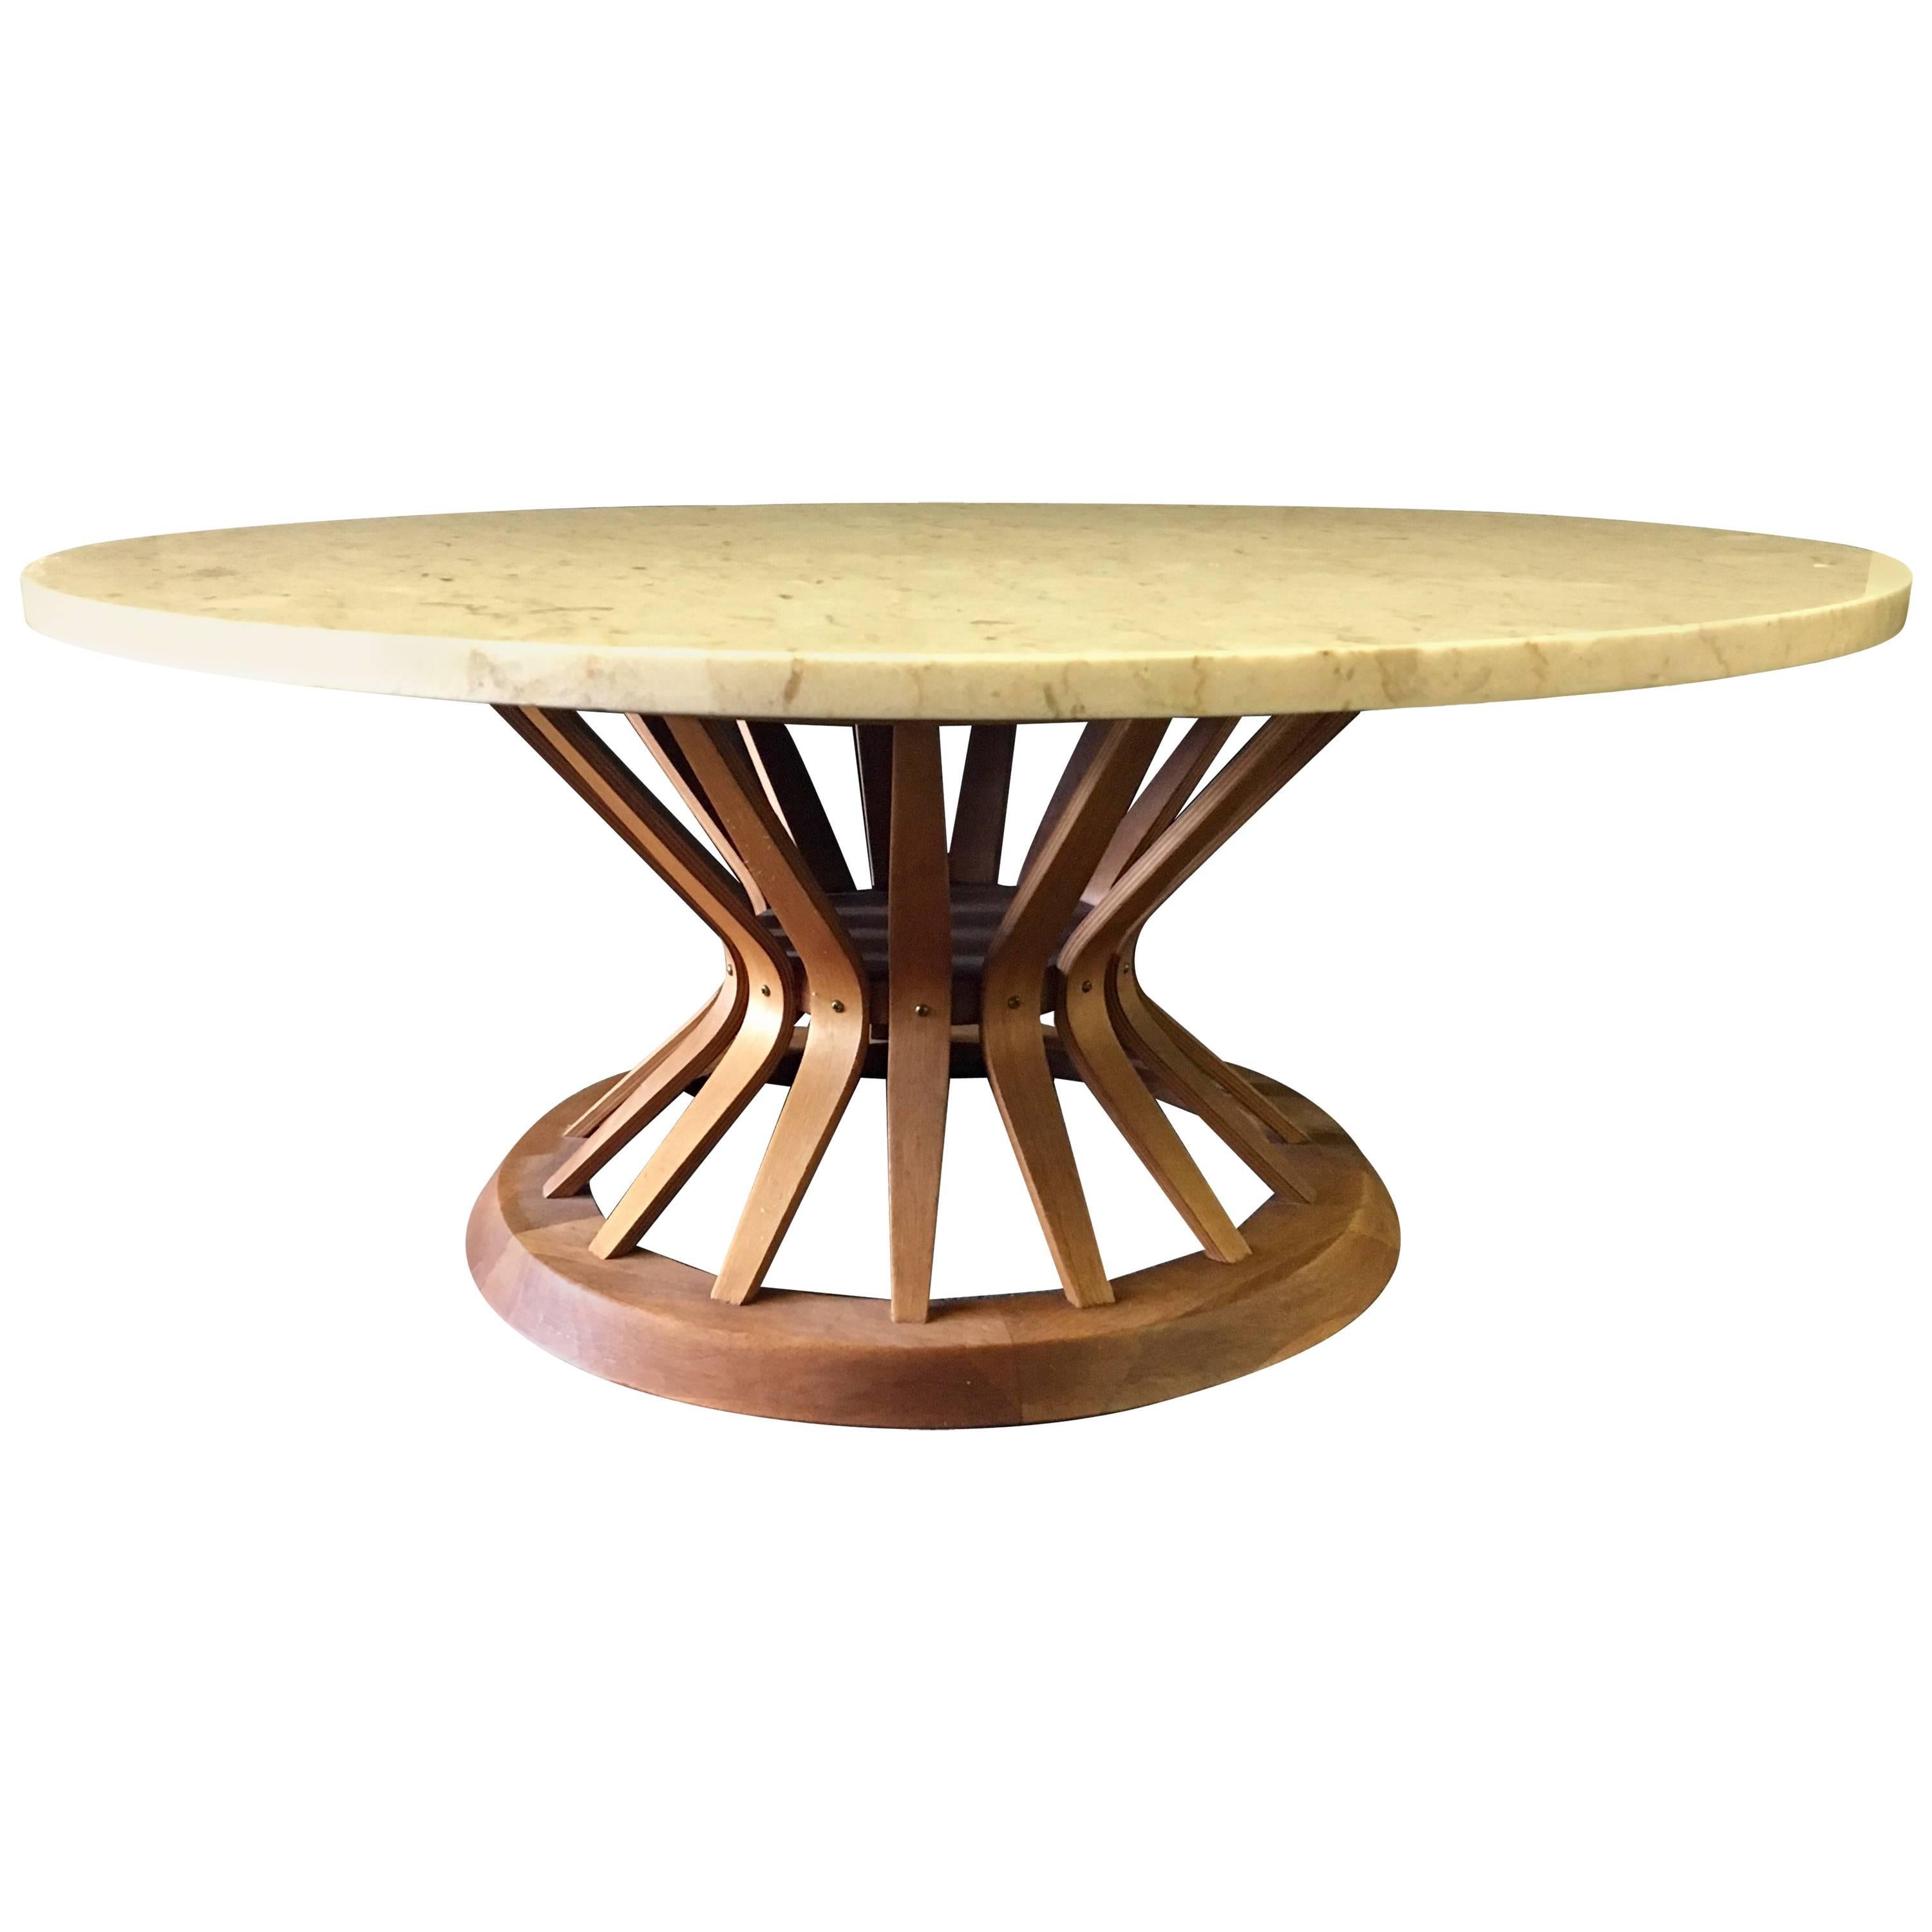 Mid-Century Round Wheatshaft Coffee Table Designed by Edward Wormley for Dunbar